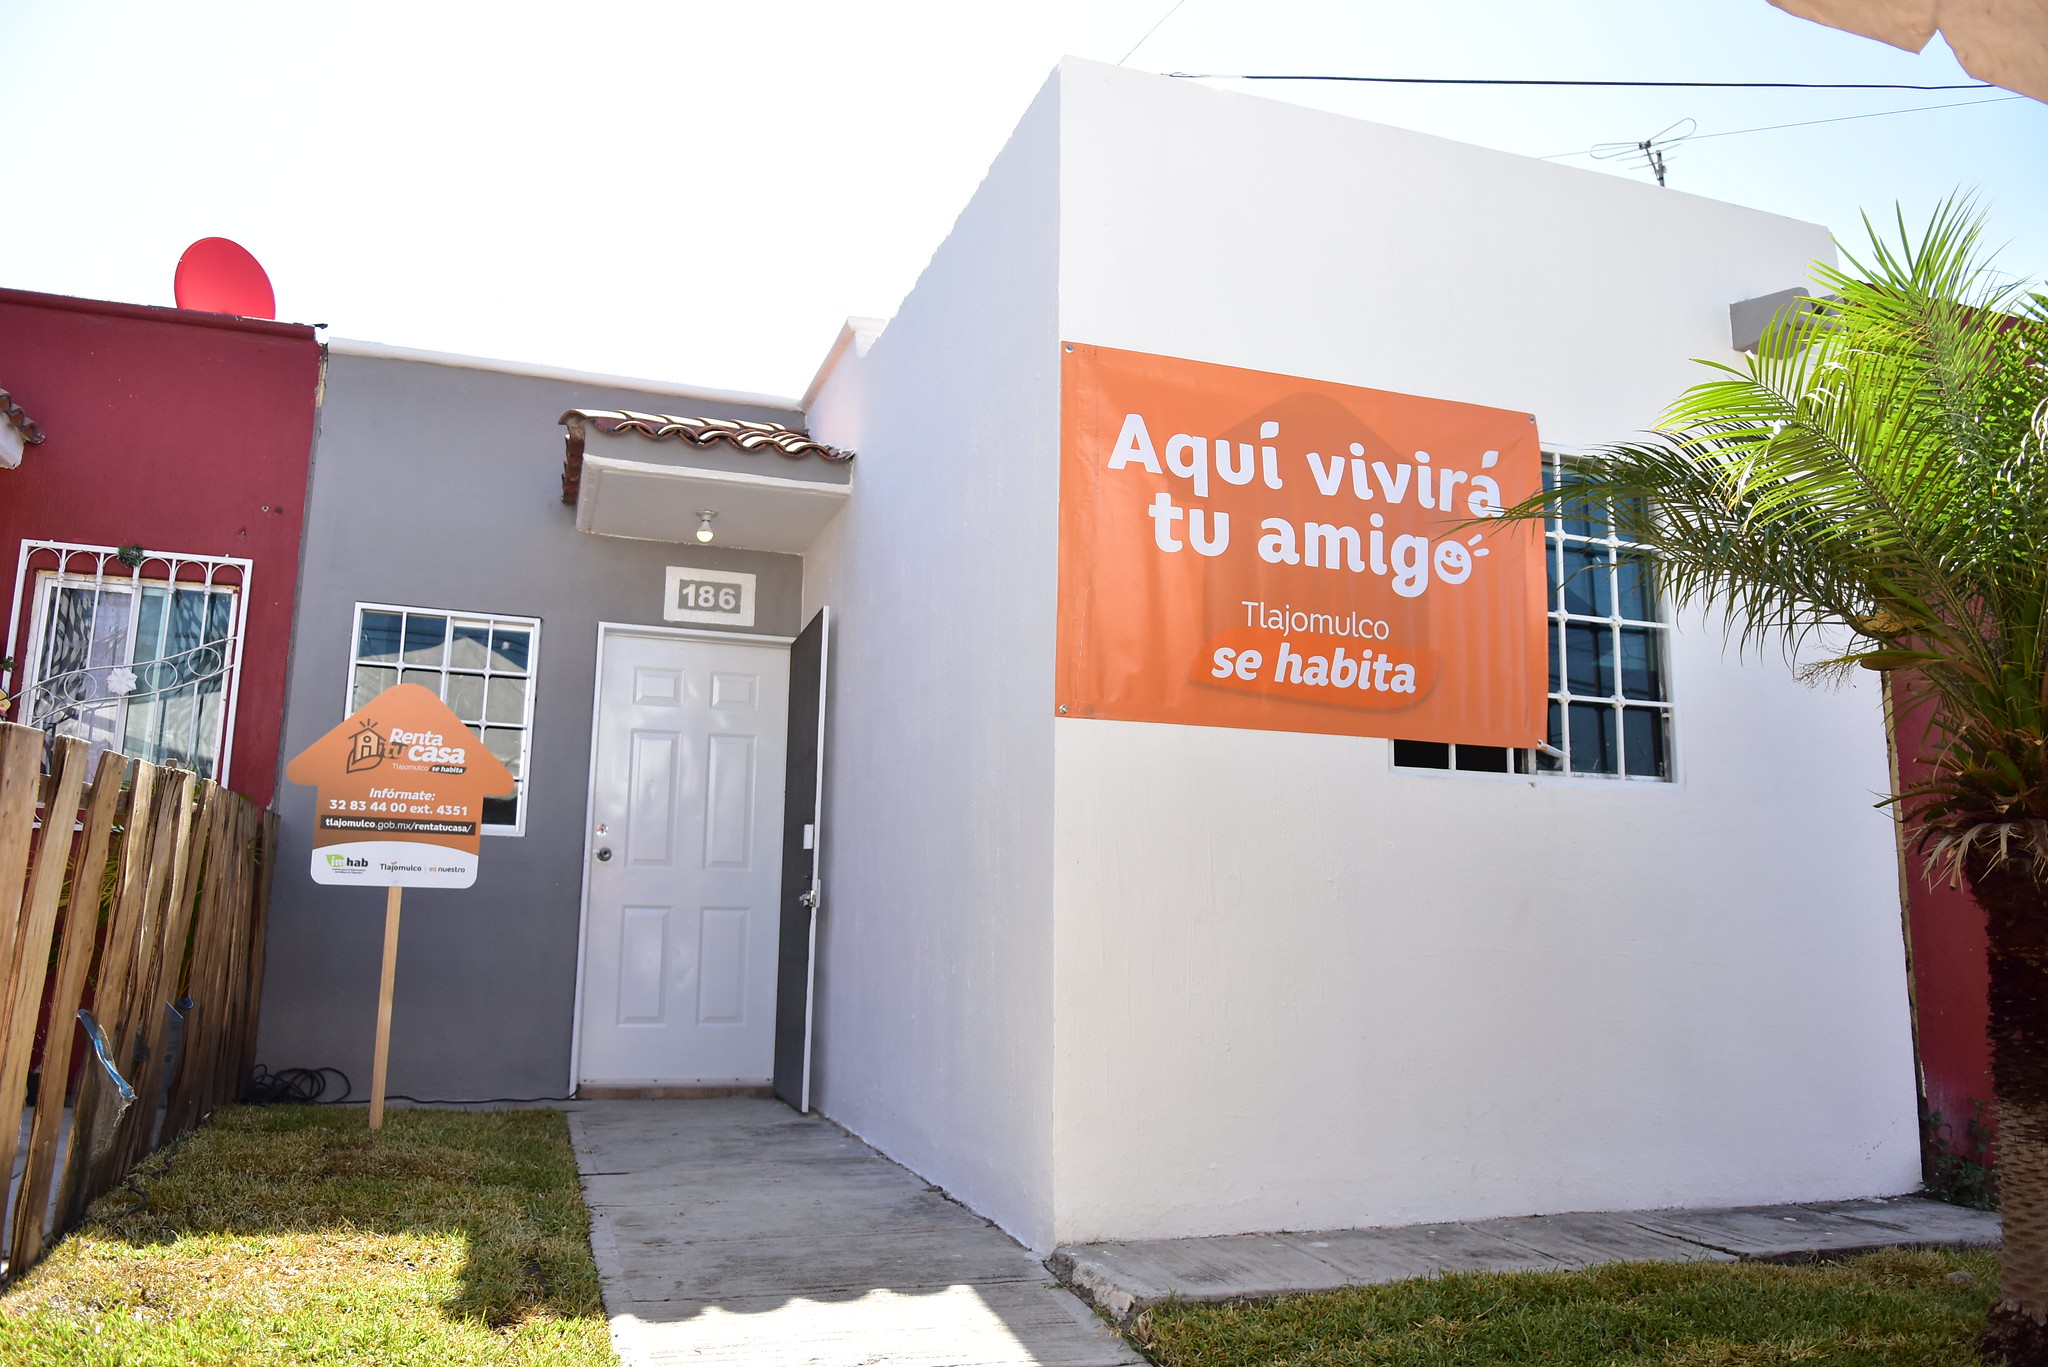 Tlajomulco ofrece casas en renta por 350 pesos… El municipio es tu aval